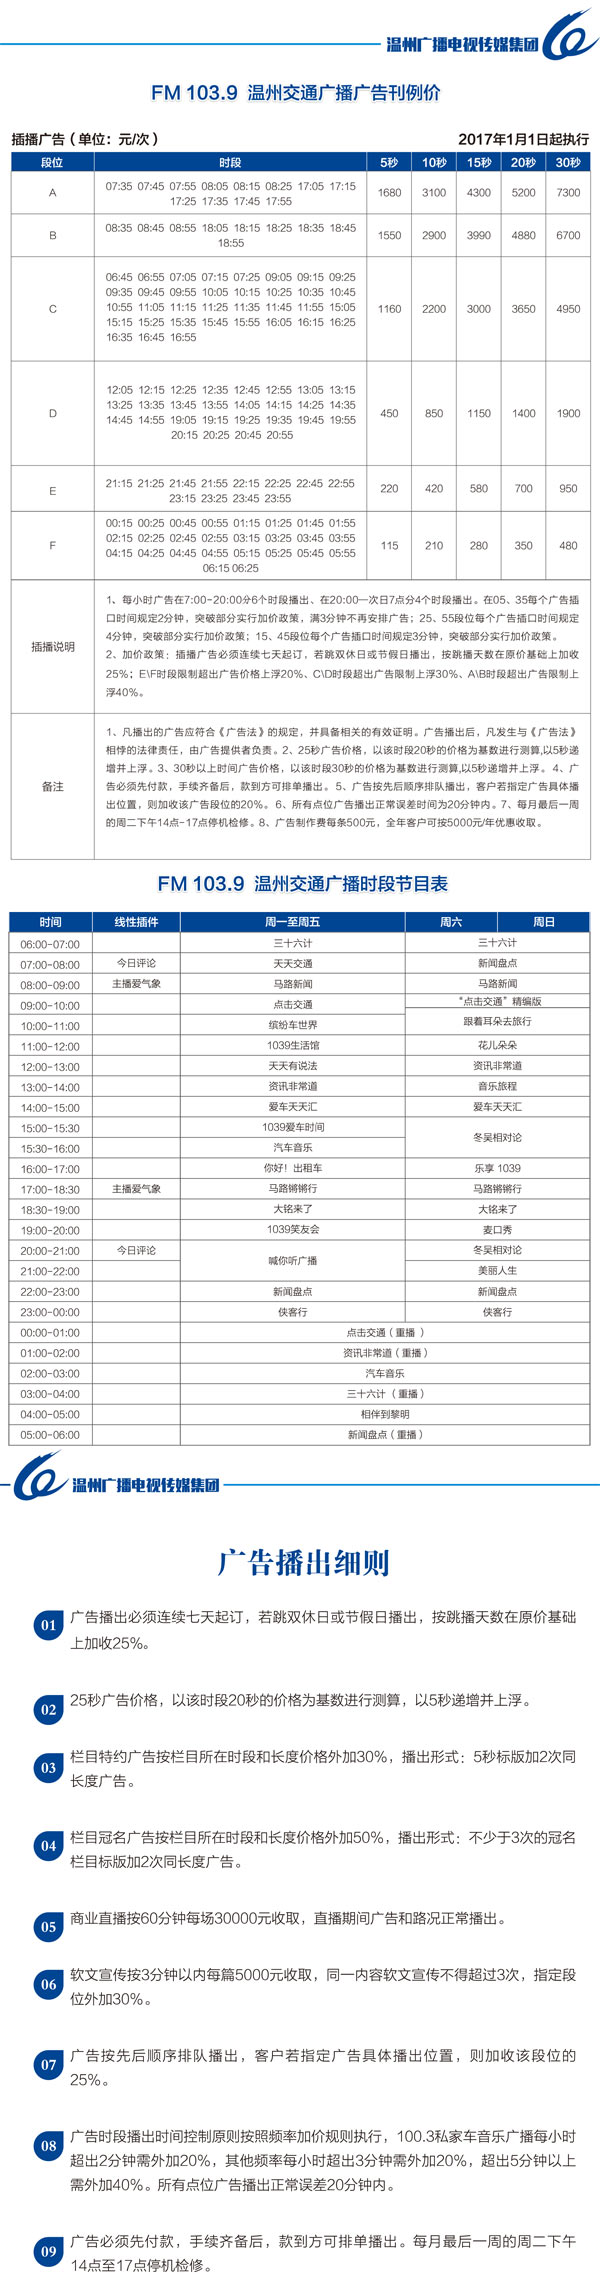 温州人民广播电台交通频率(FM103.9)2017年广告价格